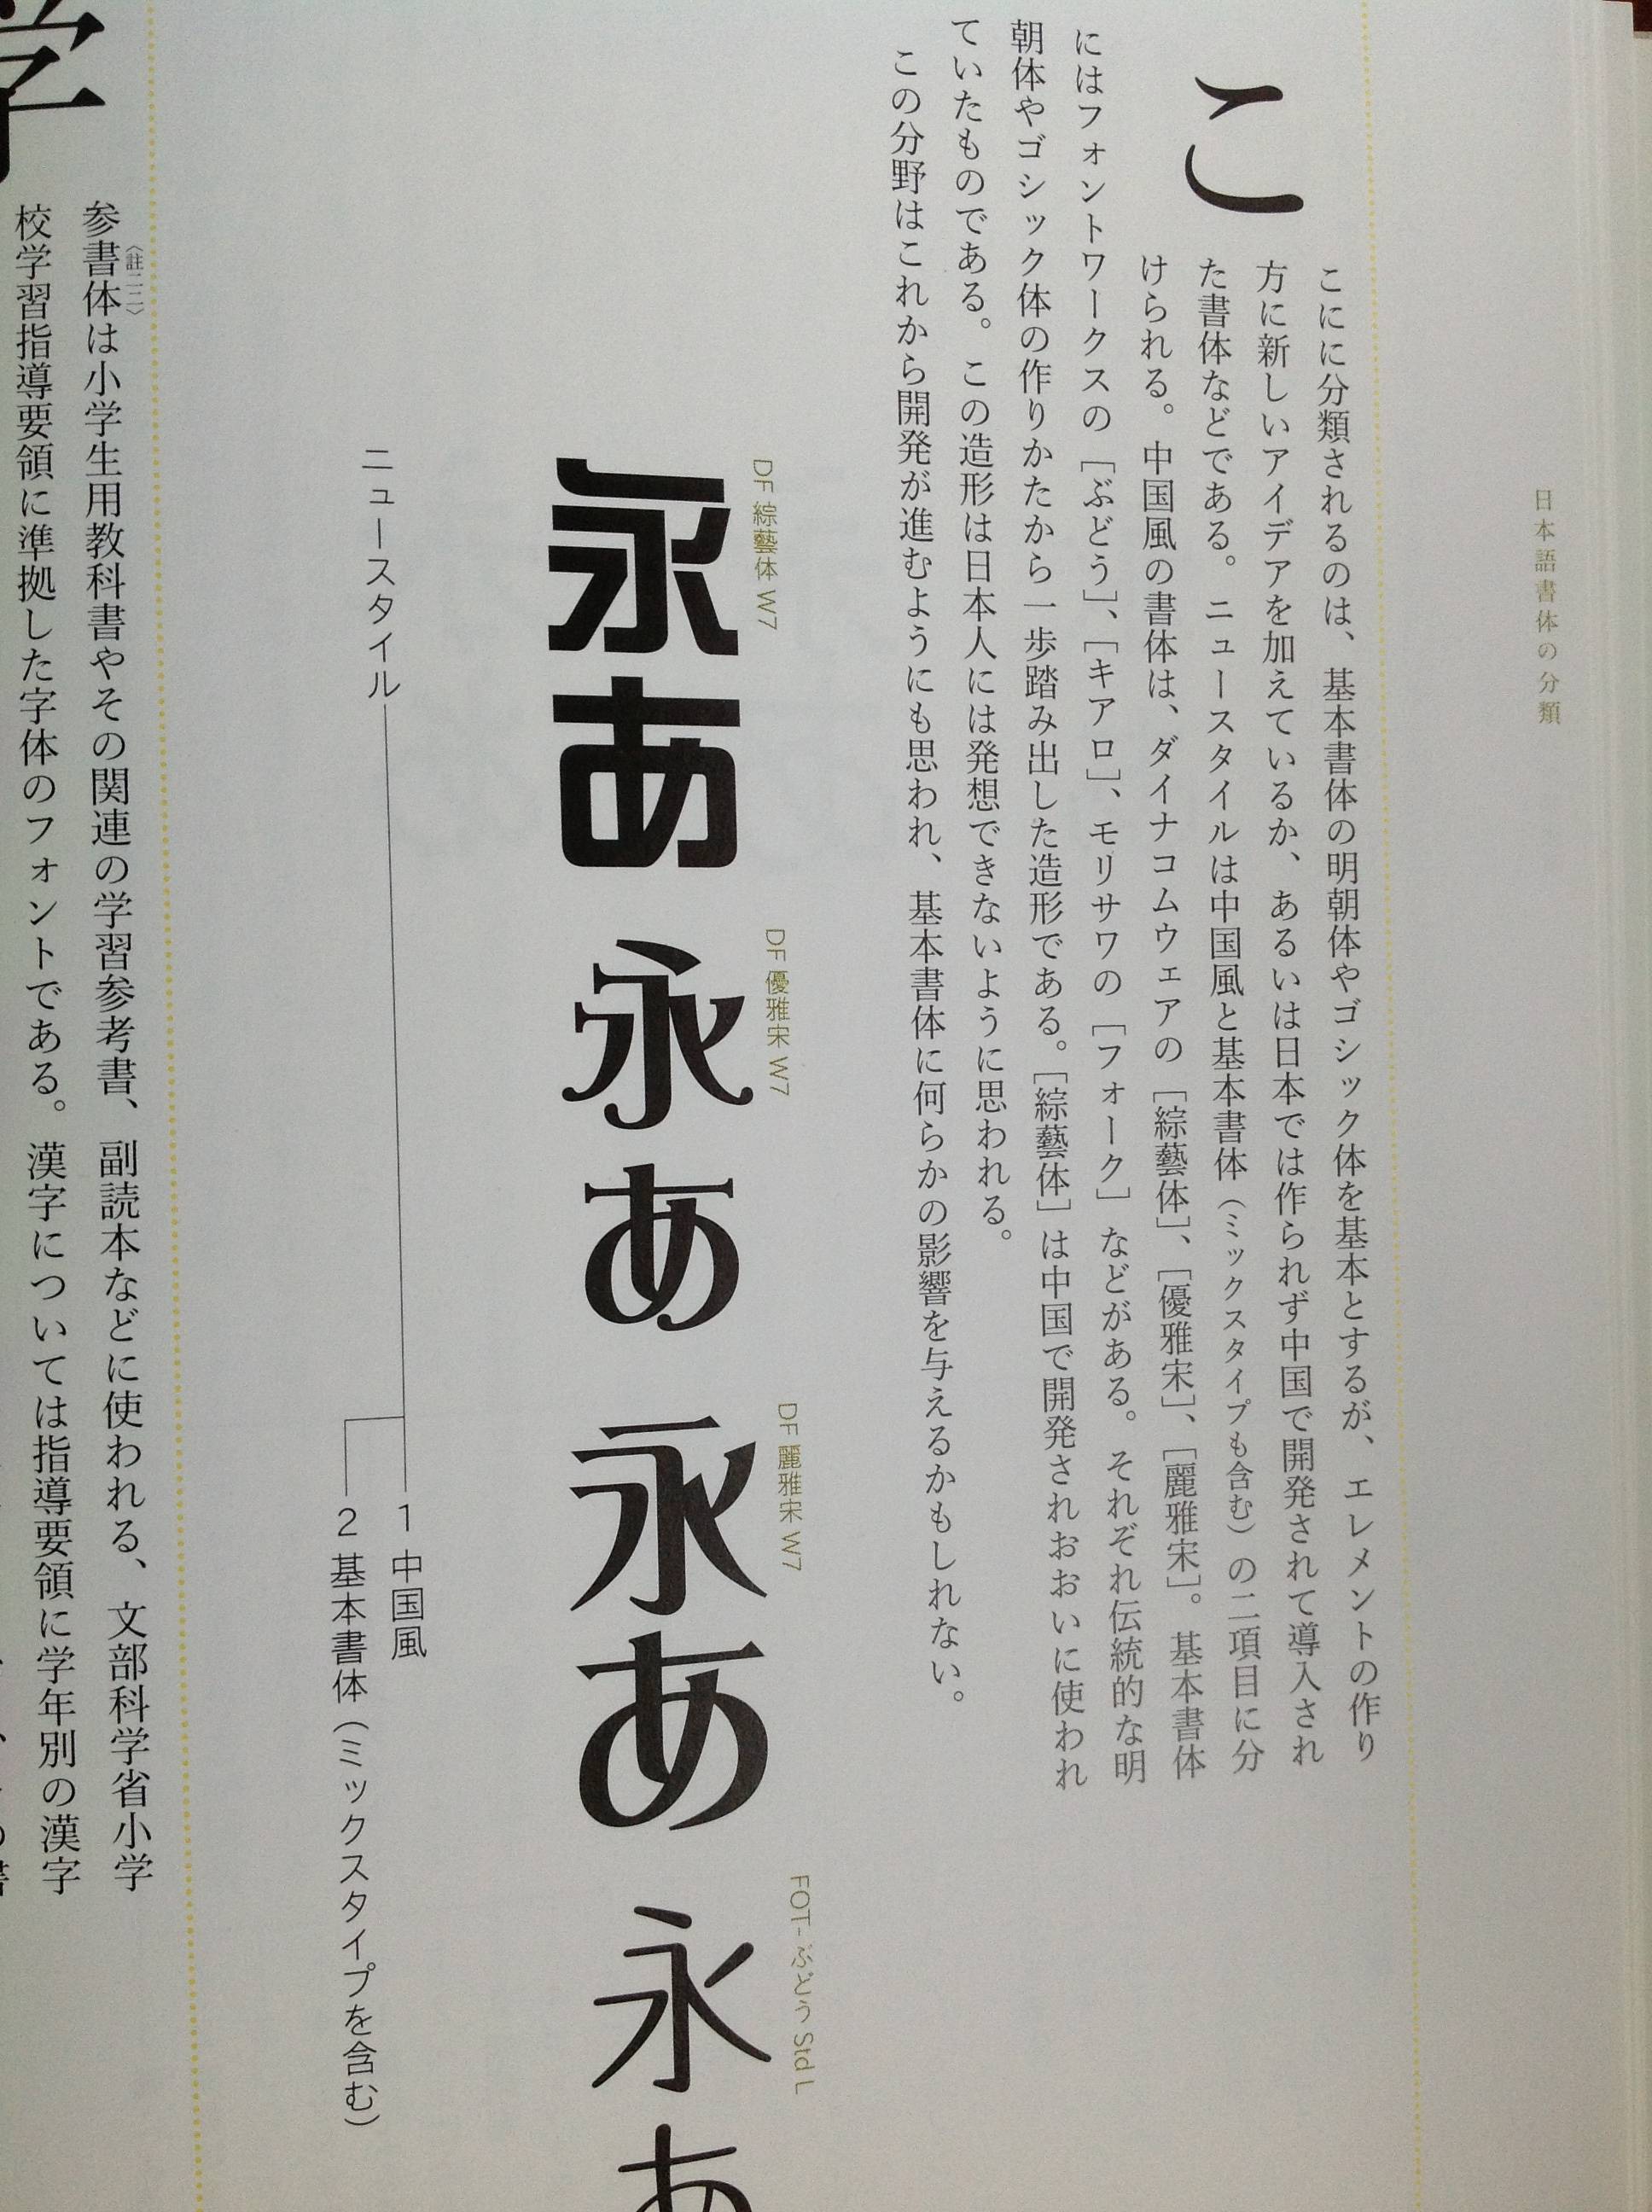 日本字体书籍 古田路9号 品牌创意 版权保护平台